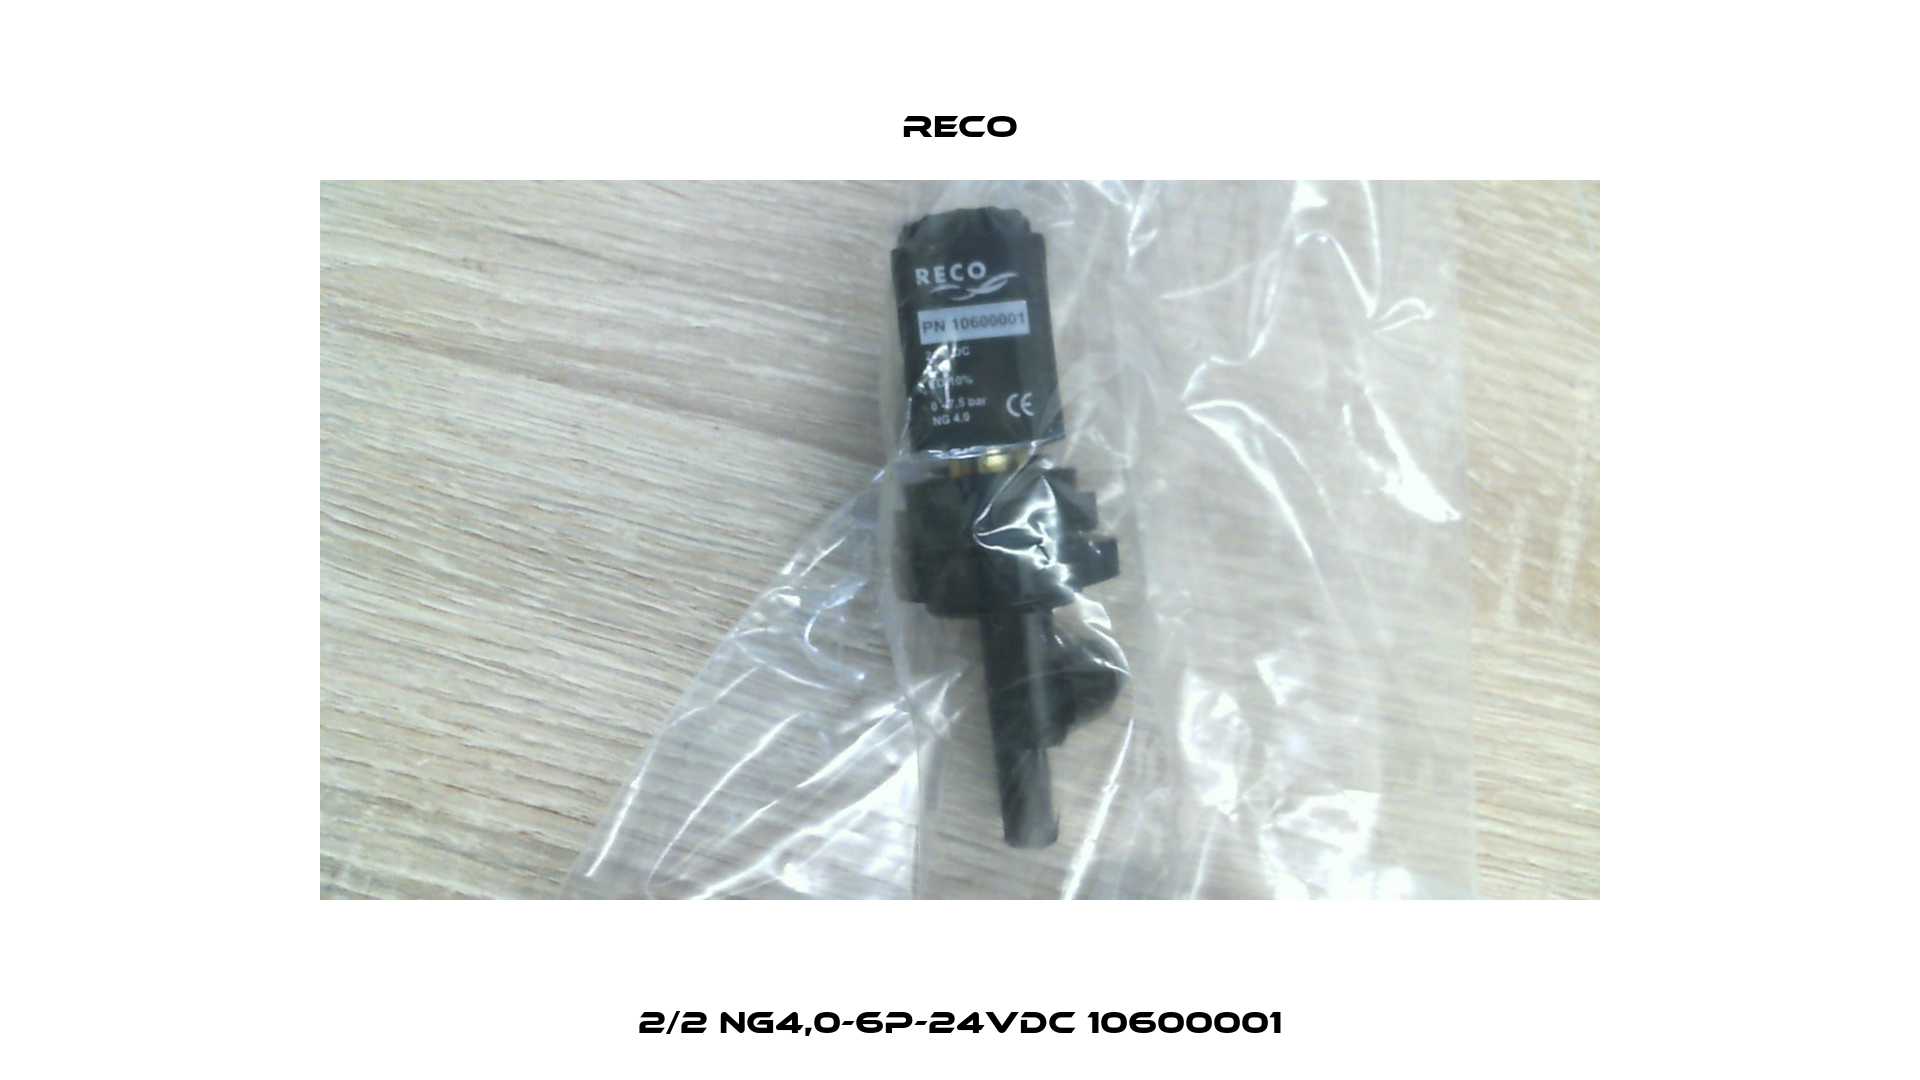 2/2 NG4,0-6P-24VDC 10600001 Reco